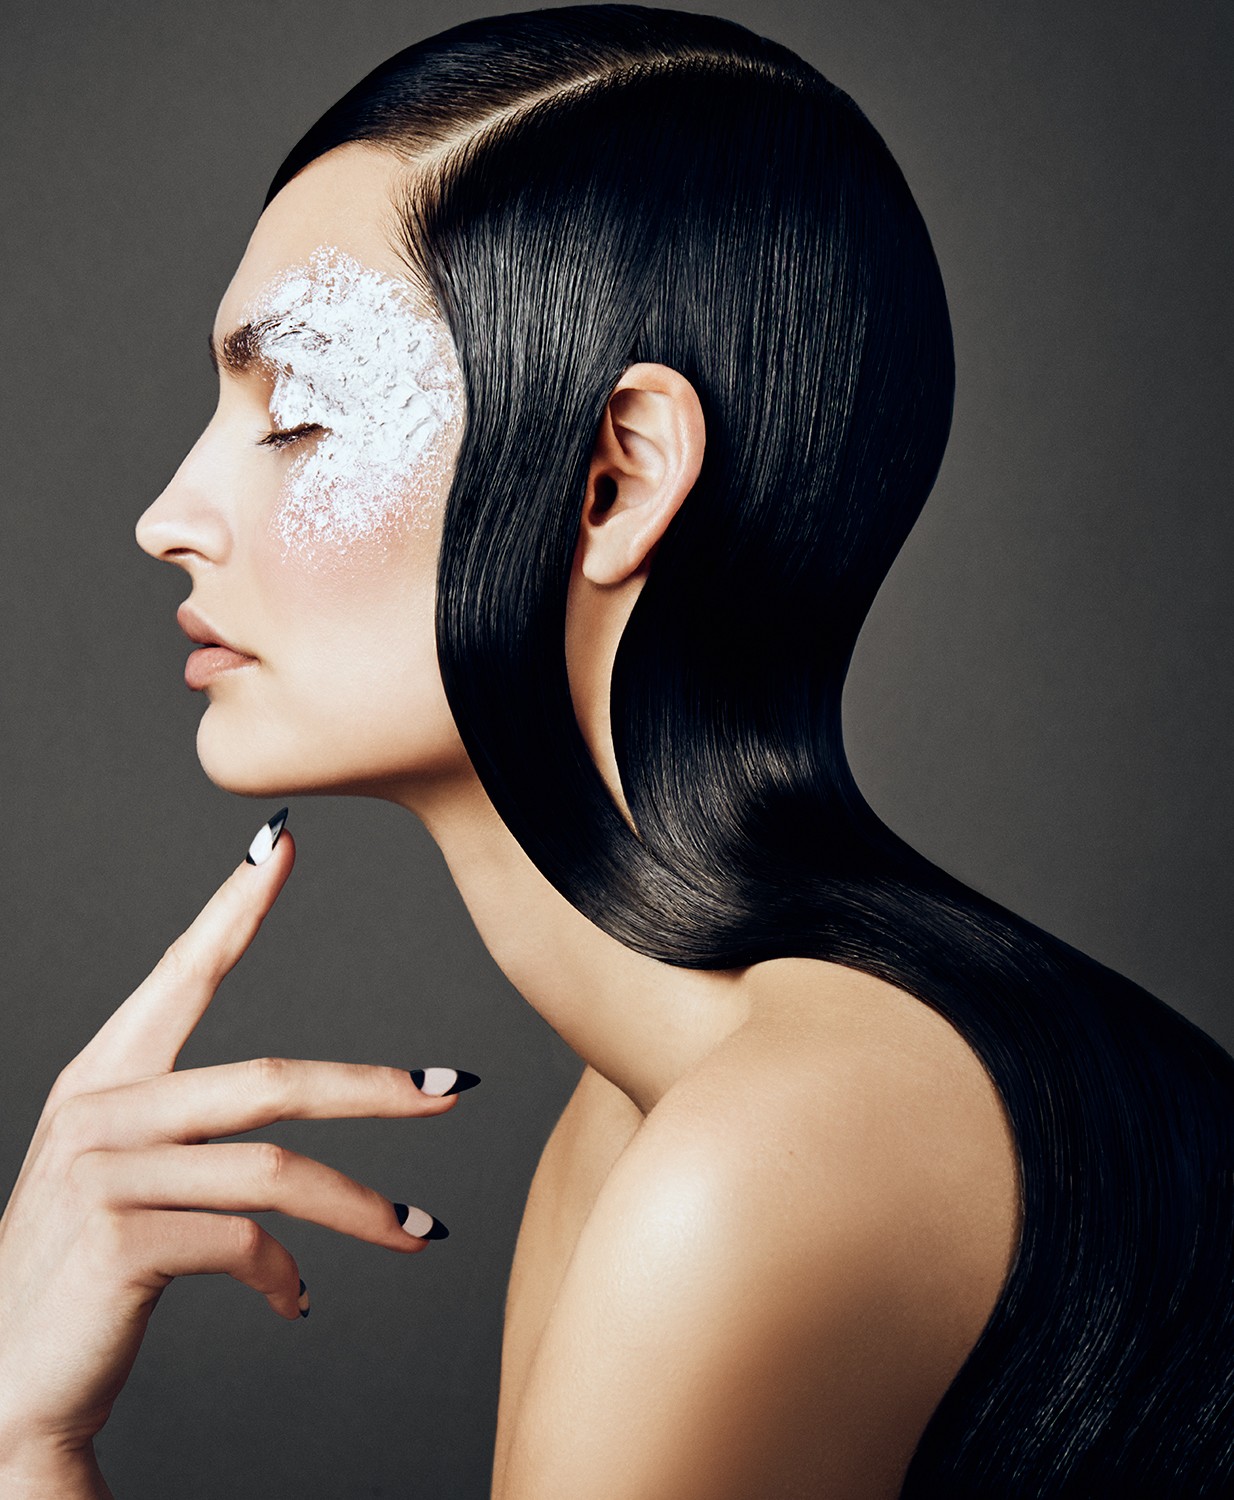 Um editorial de beleza em preto e branco pela maquiadora nova-iorquina Misha Shahzada  (Foto: Sophy Holland)